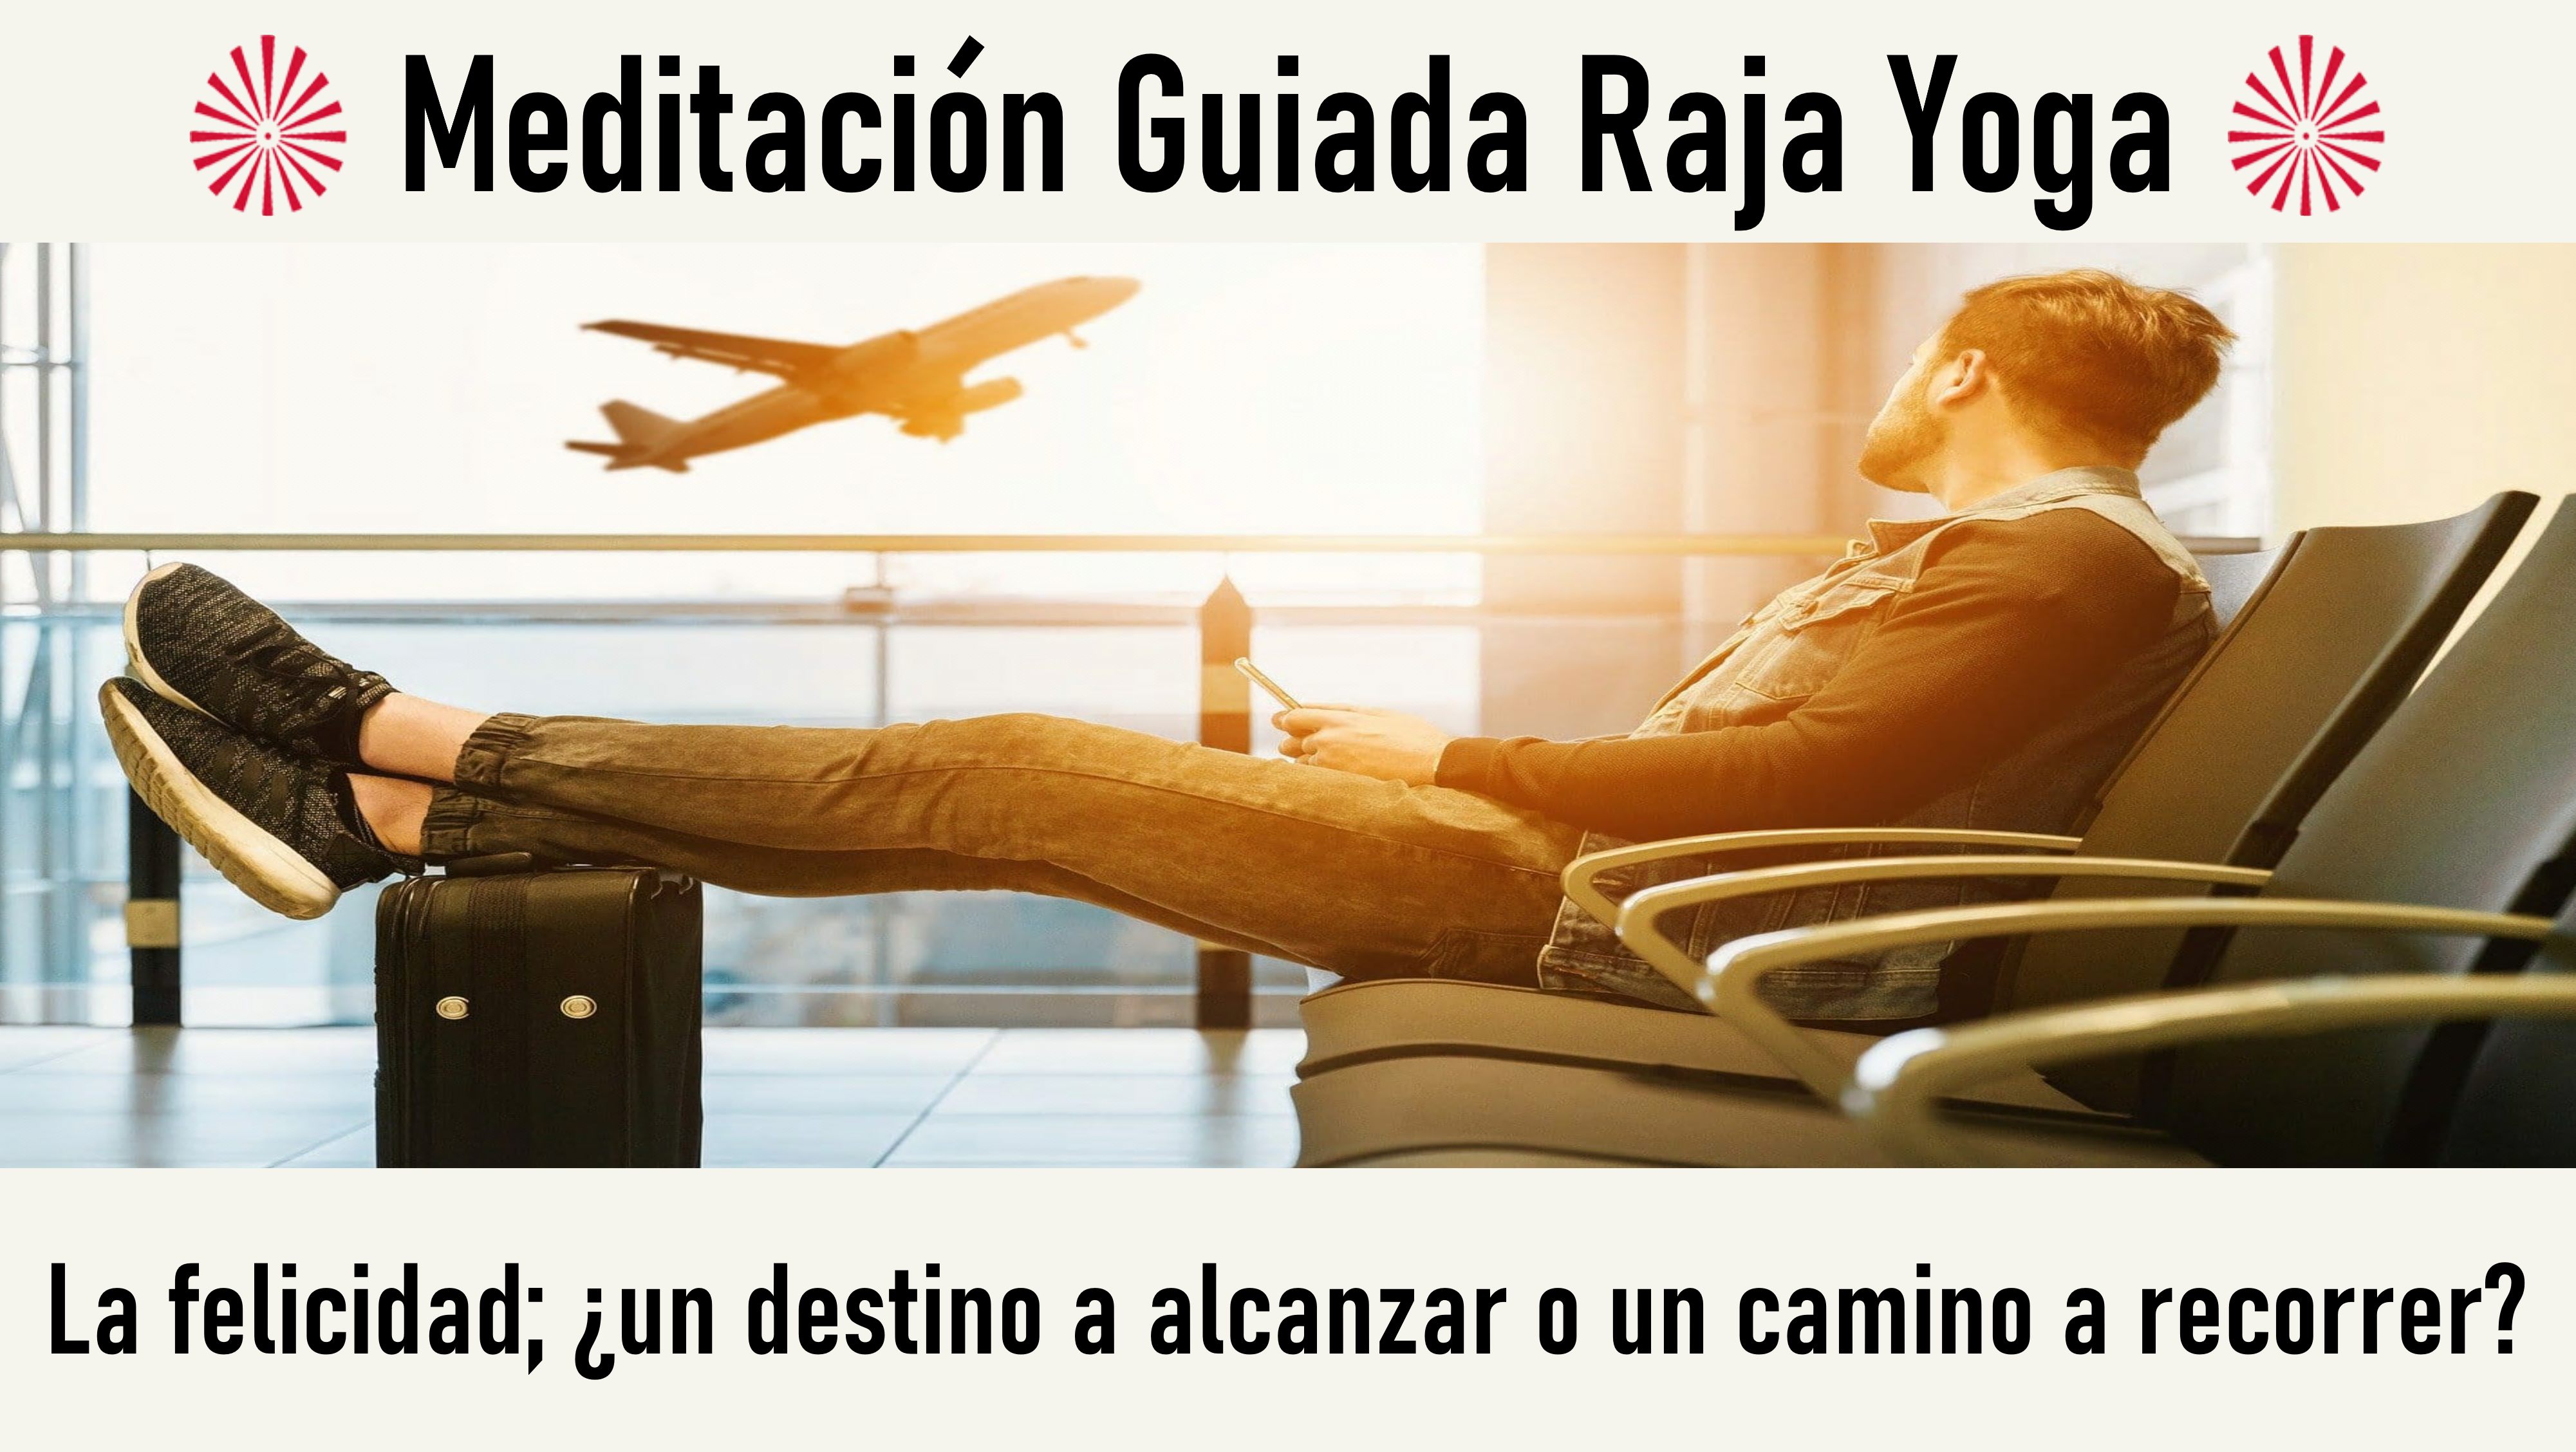 Meditación Raja Yoga: La felicidad, un destino a alcanzar o un camino a recorrer (4 Junio 2020) On-line desde Mallorca